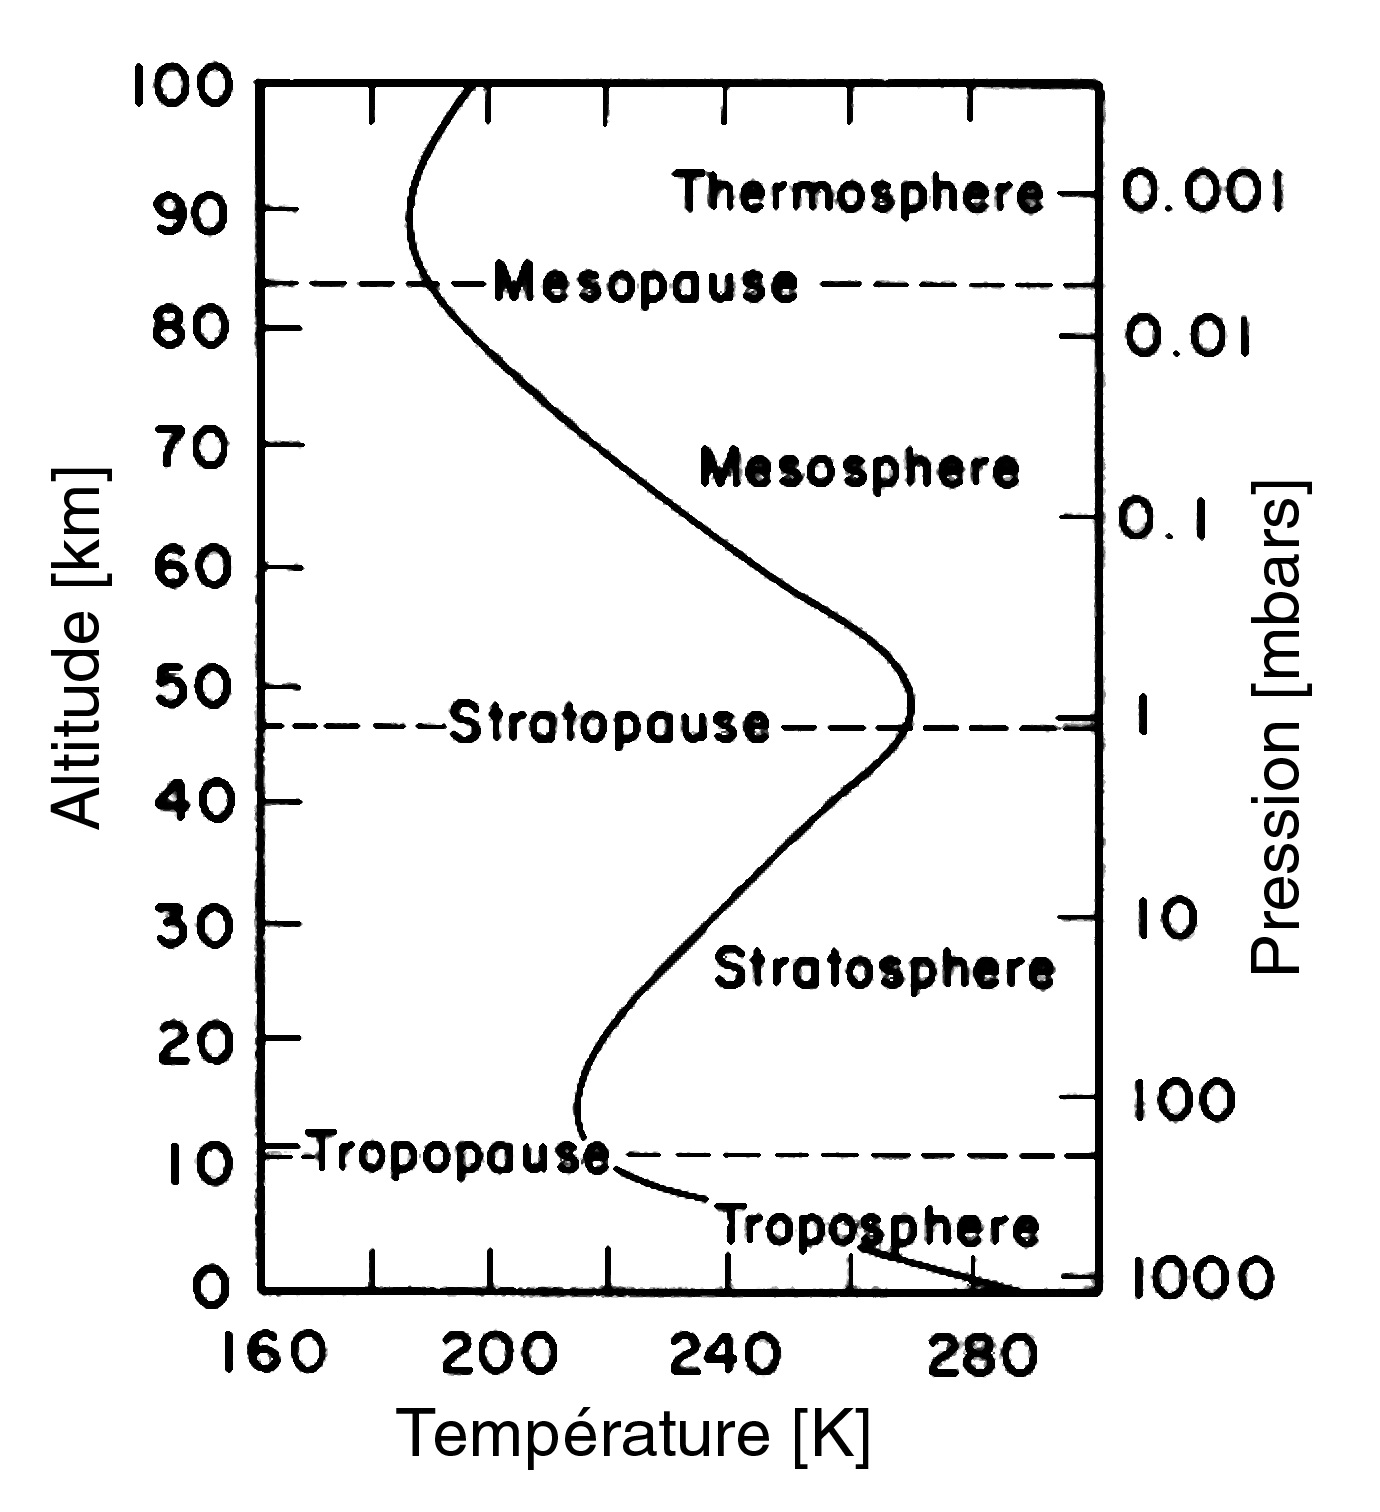 L’atmosphère est composée de diverses couches thermiques